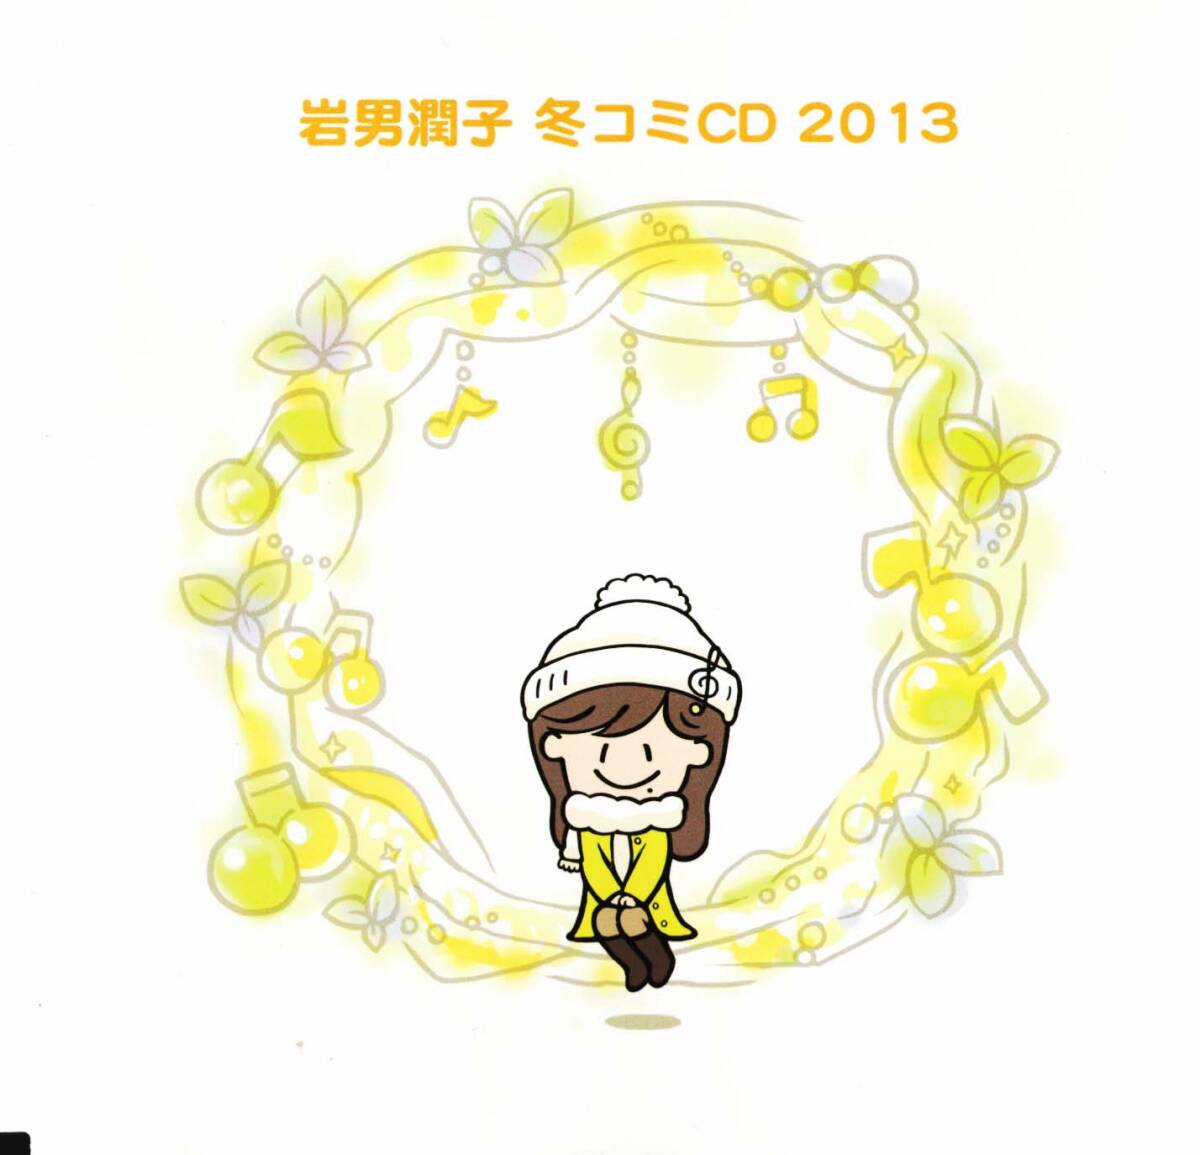 岩男潤子 冬コミCD 2013 クリックポスト可能の画像1